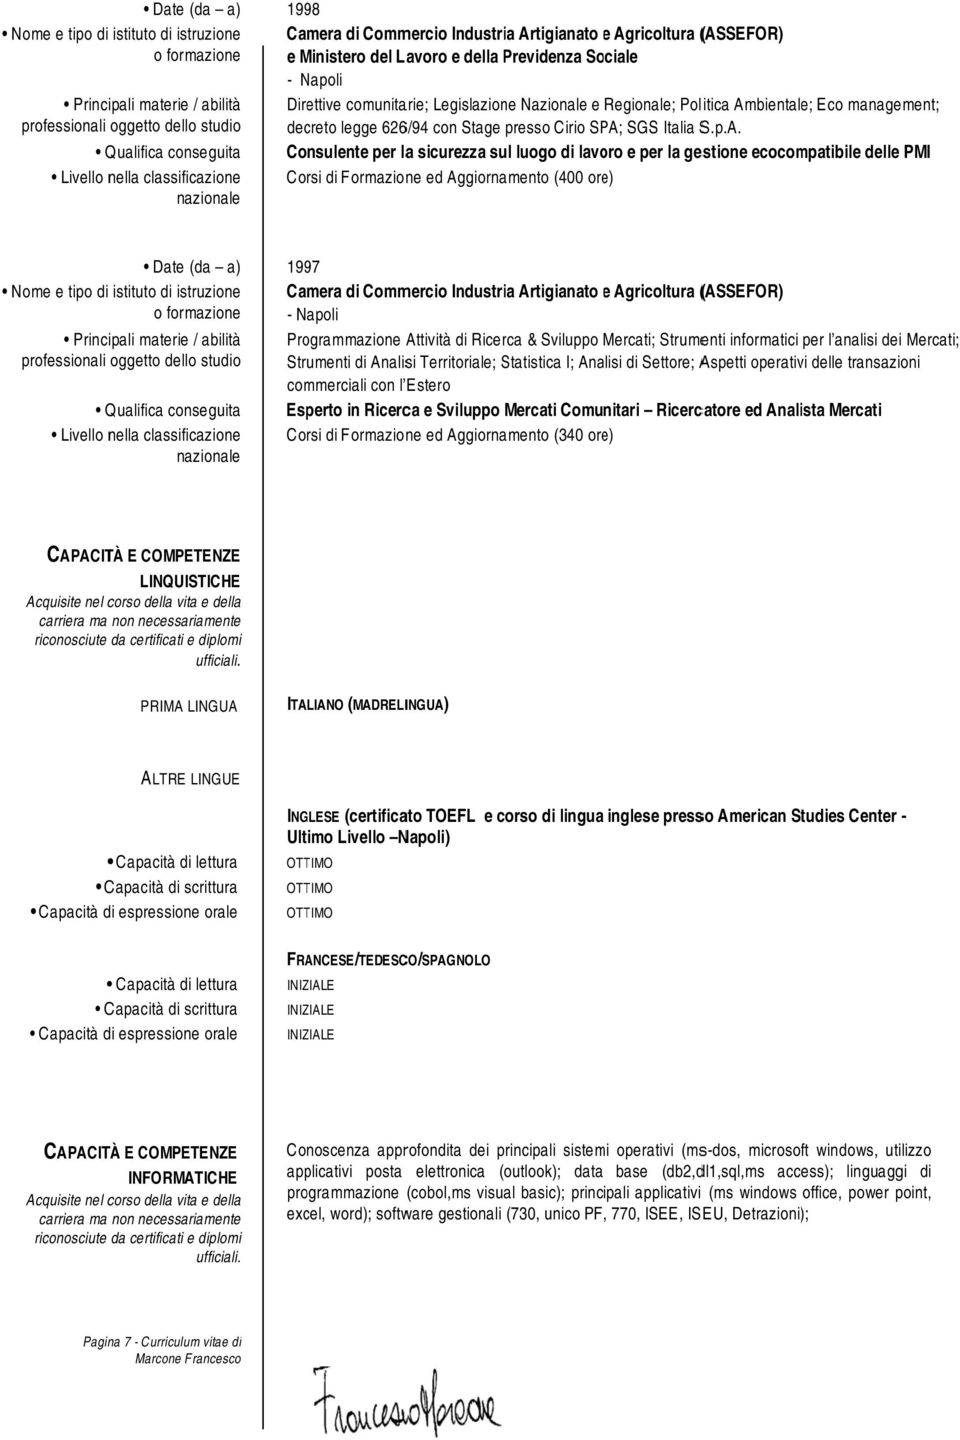 biental e; Eco management; decreto legge 626/94 con Stage presso Cirio SPA;